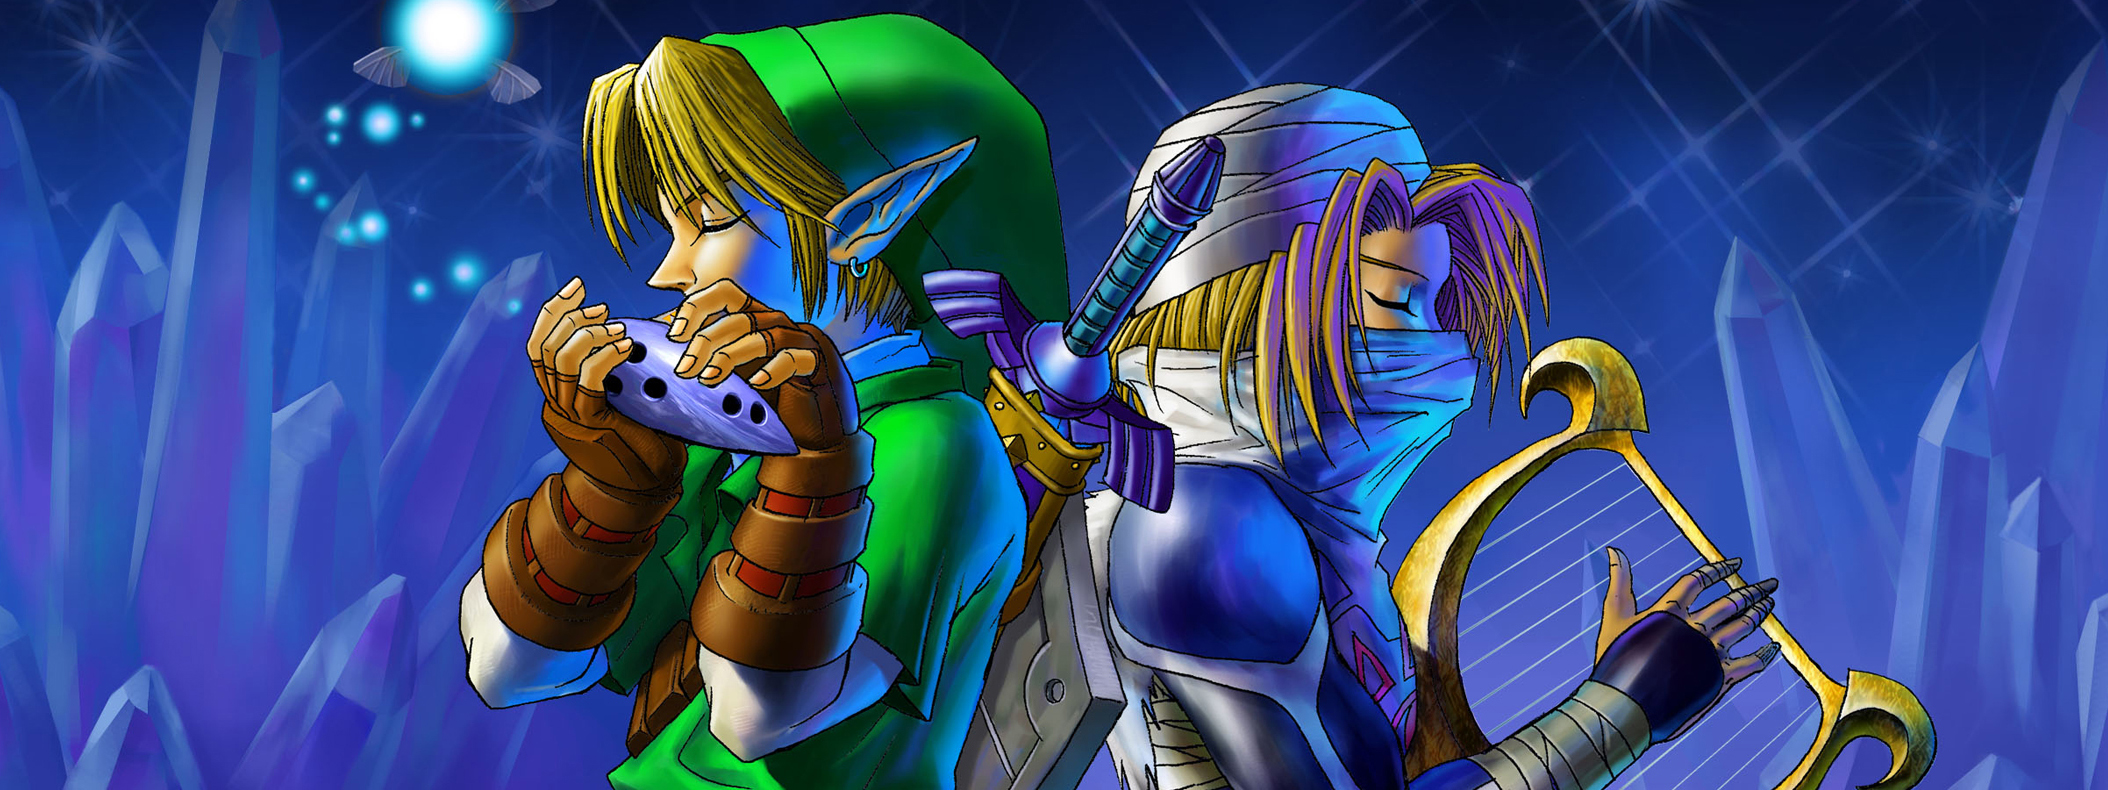 Wallpapers) Pack de imagens : Legend of Zelda : Ocarina Of Time